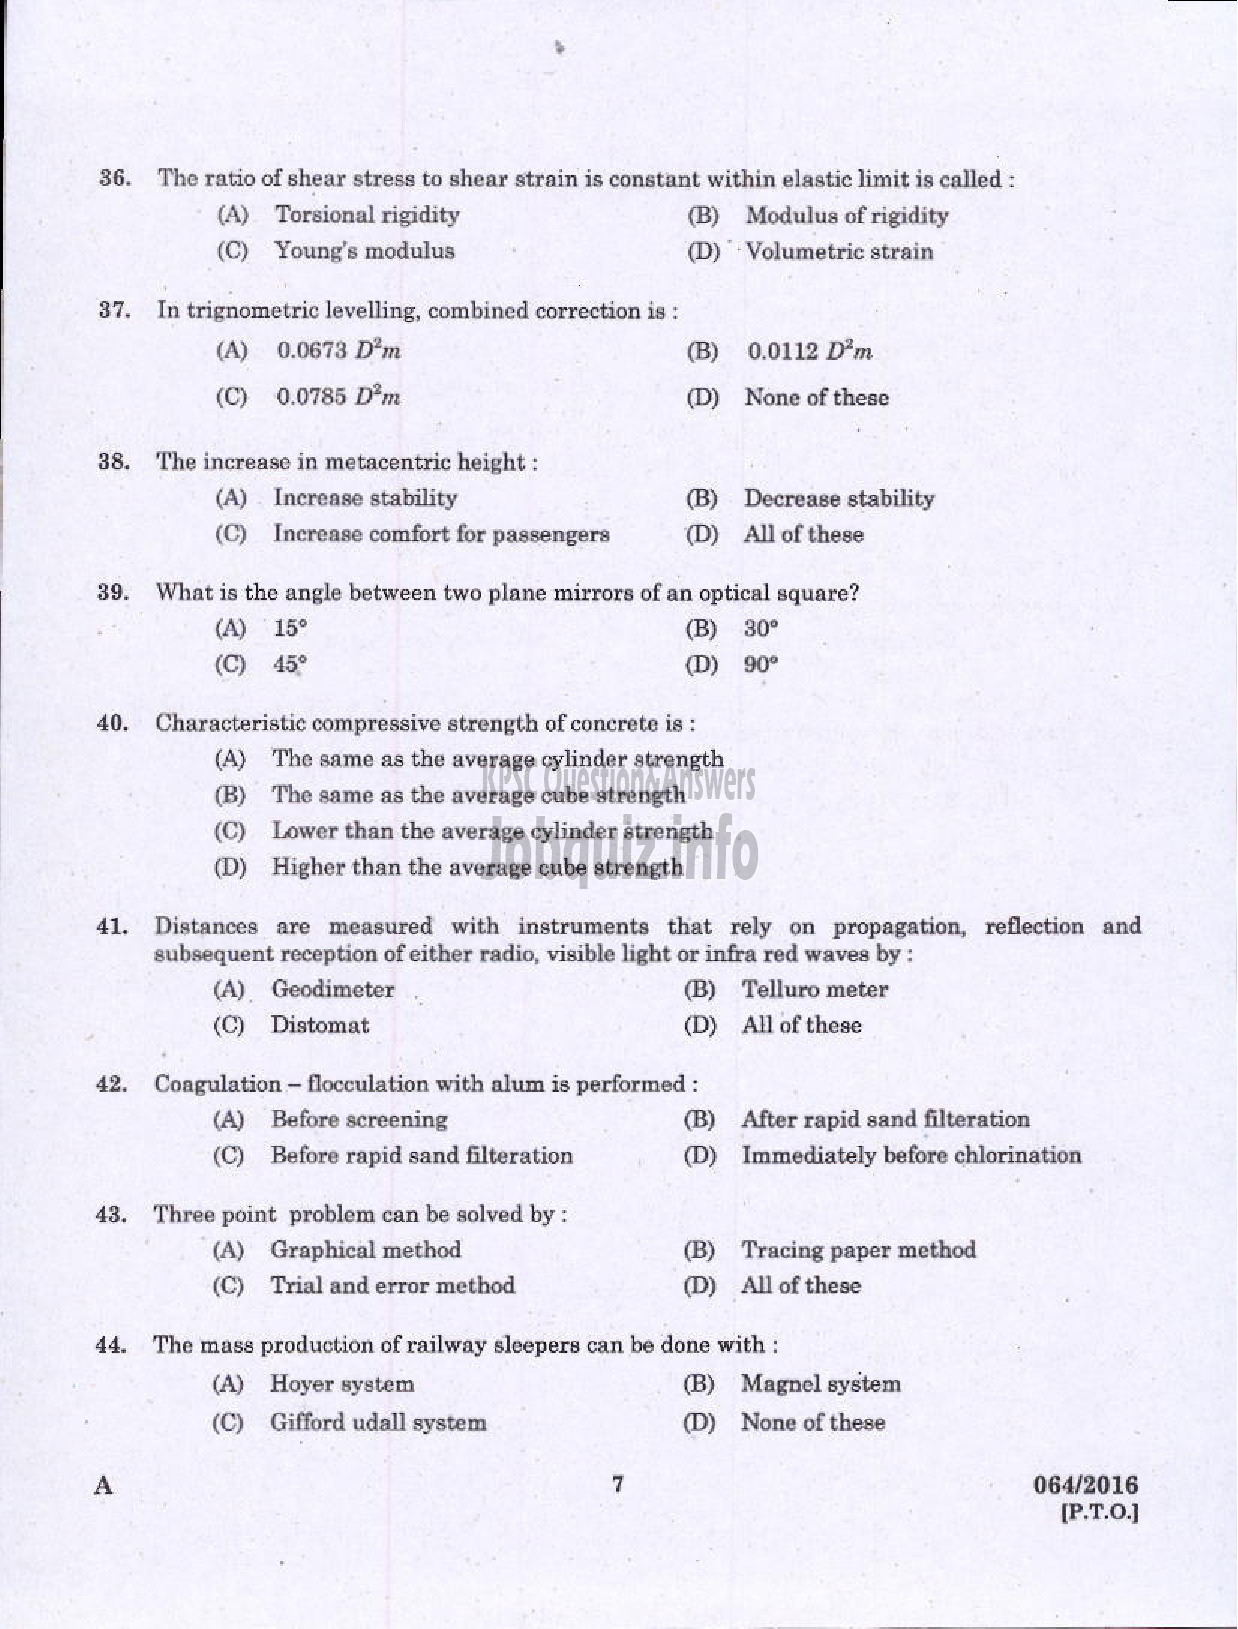 Kerala PSC Question Paper - VOCATIONAL TEACHER CIVIL CONSTRUCTION AND MAINTENANCE VHSE-5